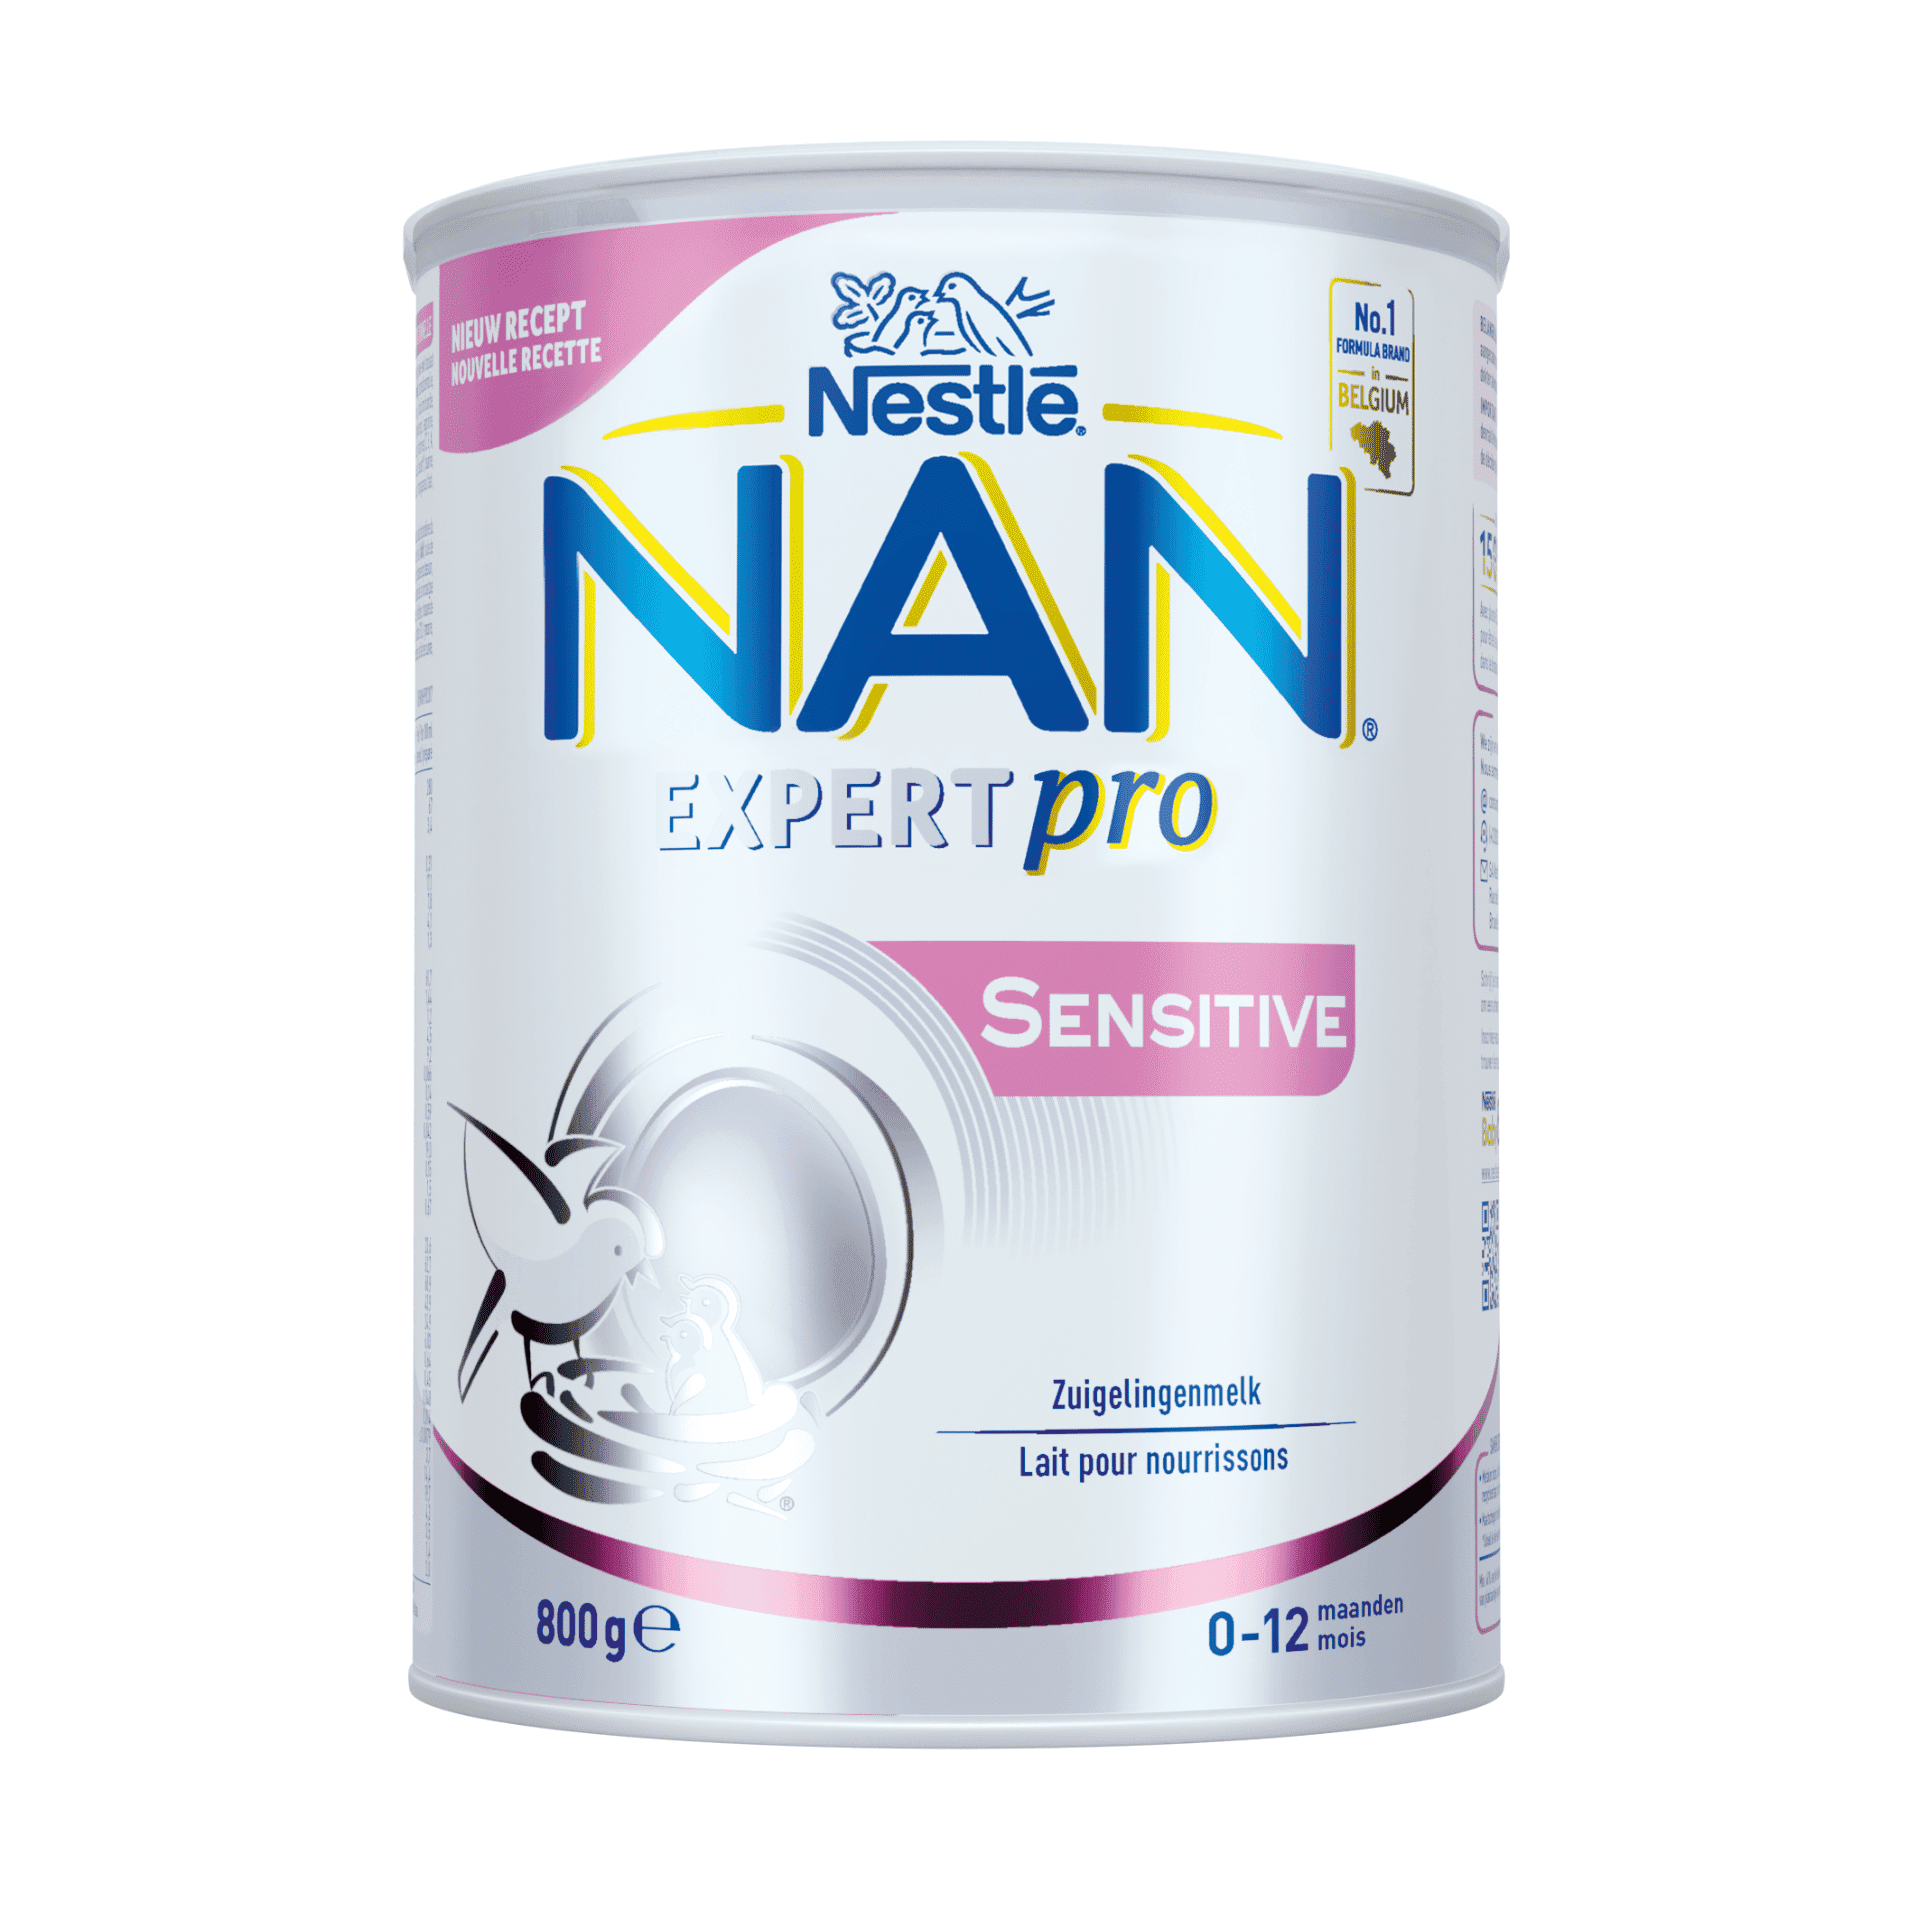 Nan Expertpro Sensitive 